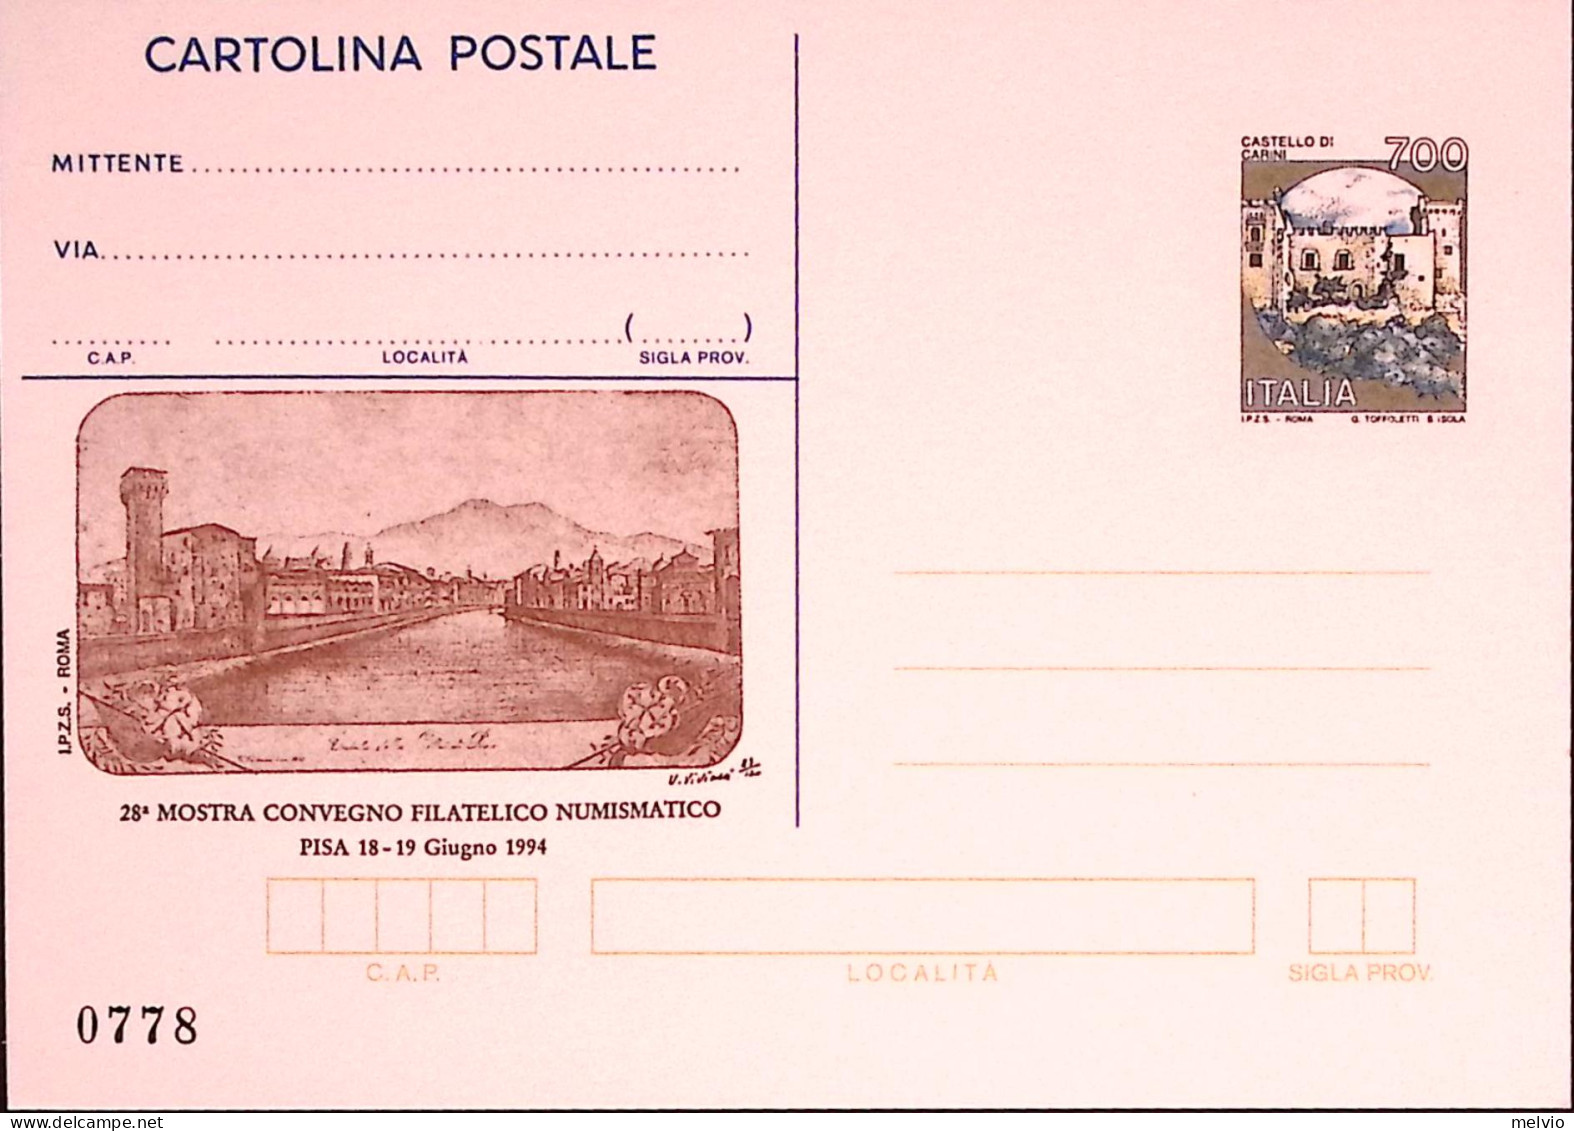 1994-PISA Cartolina Postale IPZS Lire 700 Nuova - Interi Postali